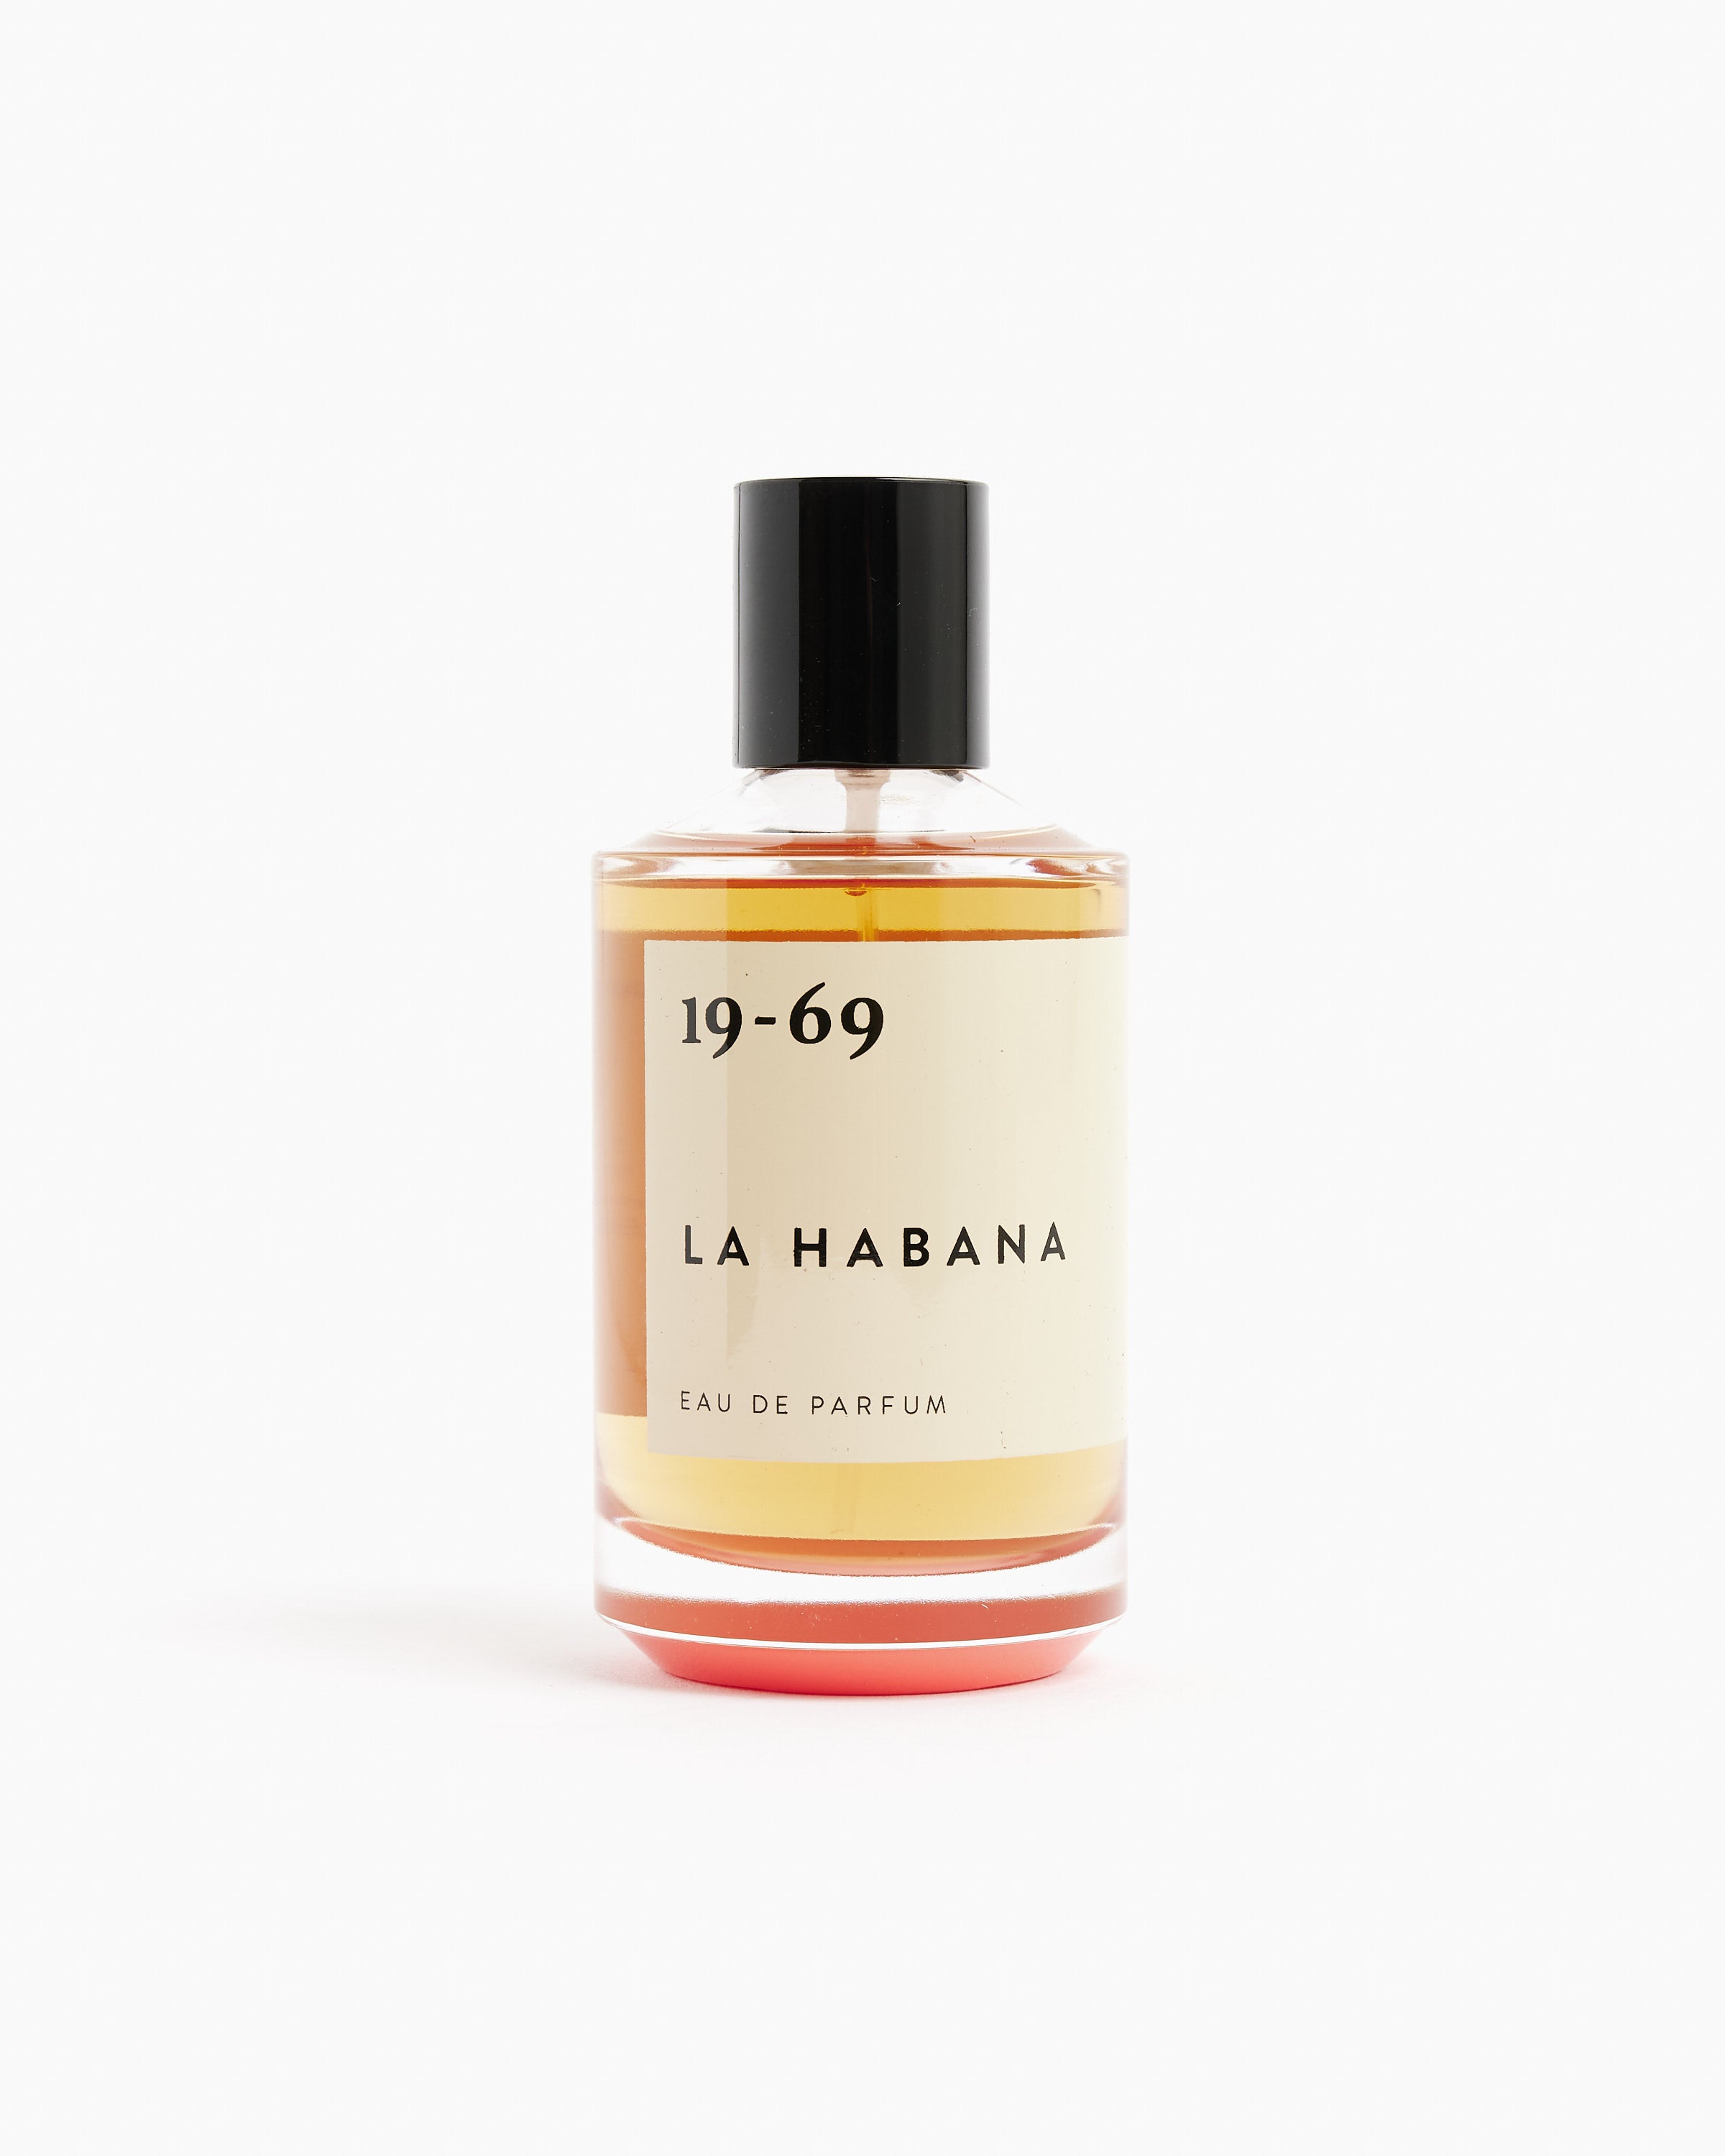 Perfume in La Habana